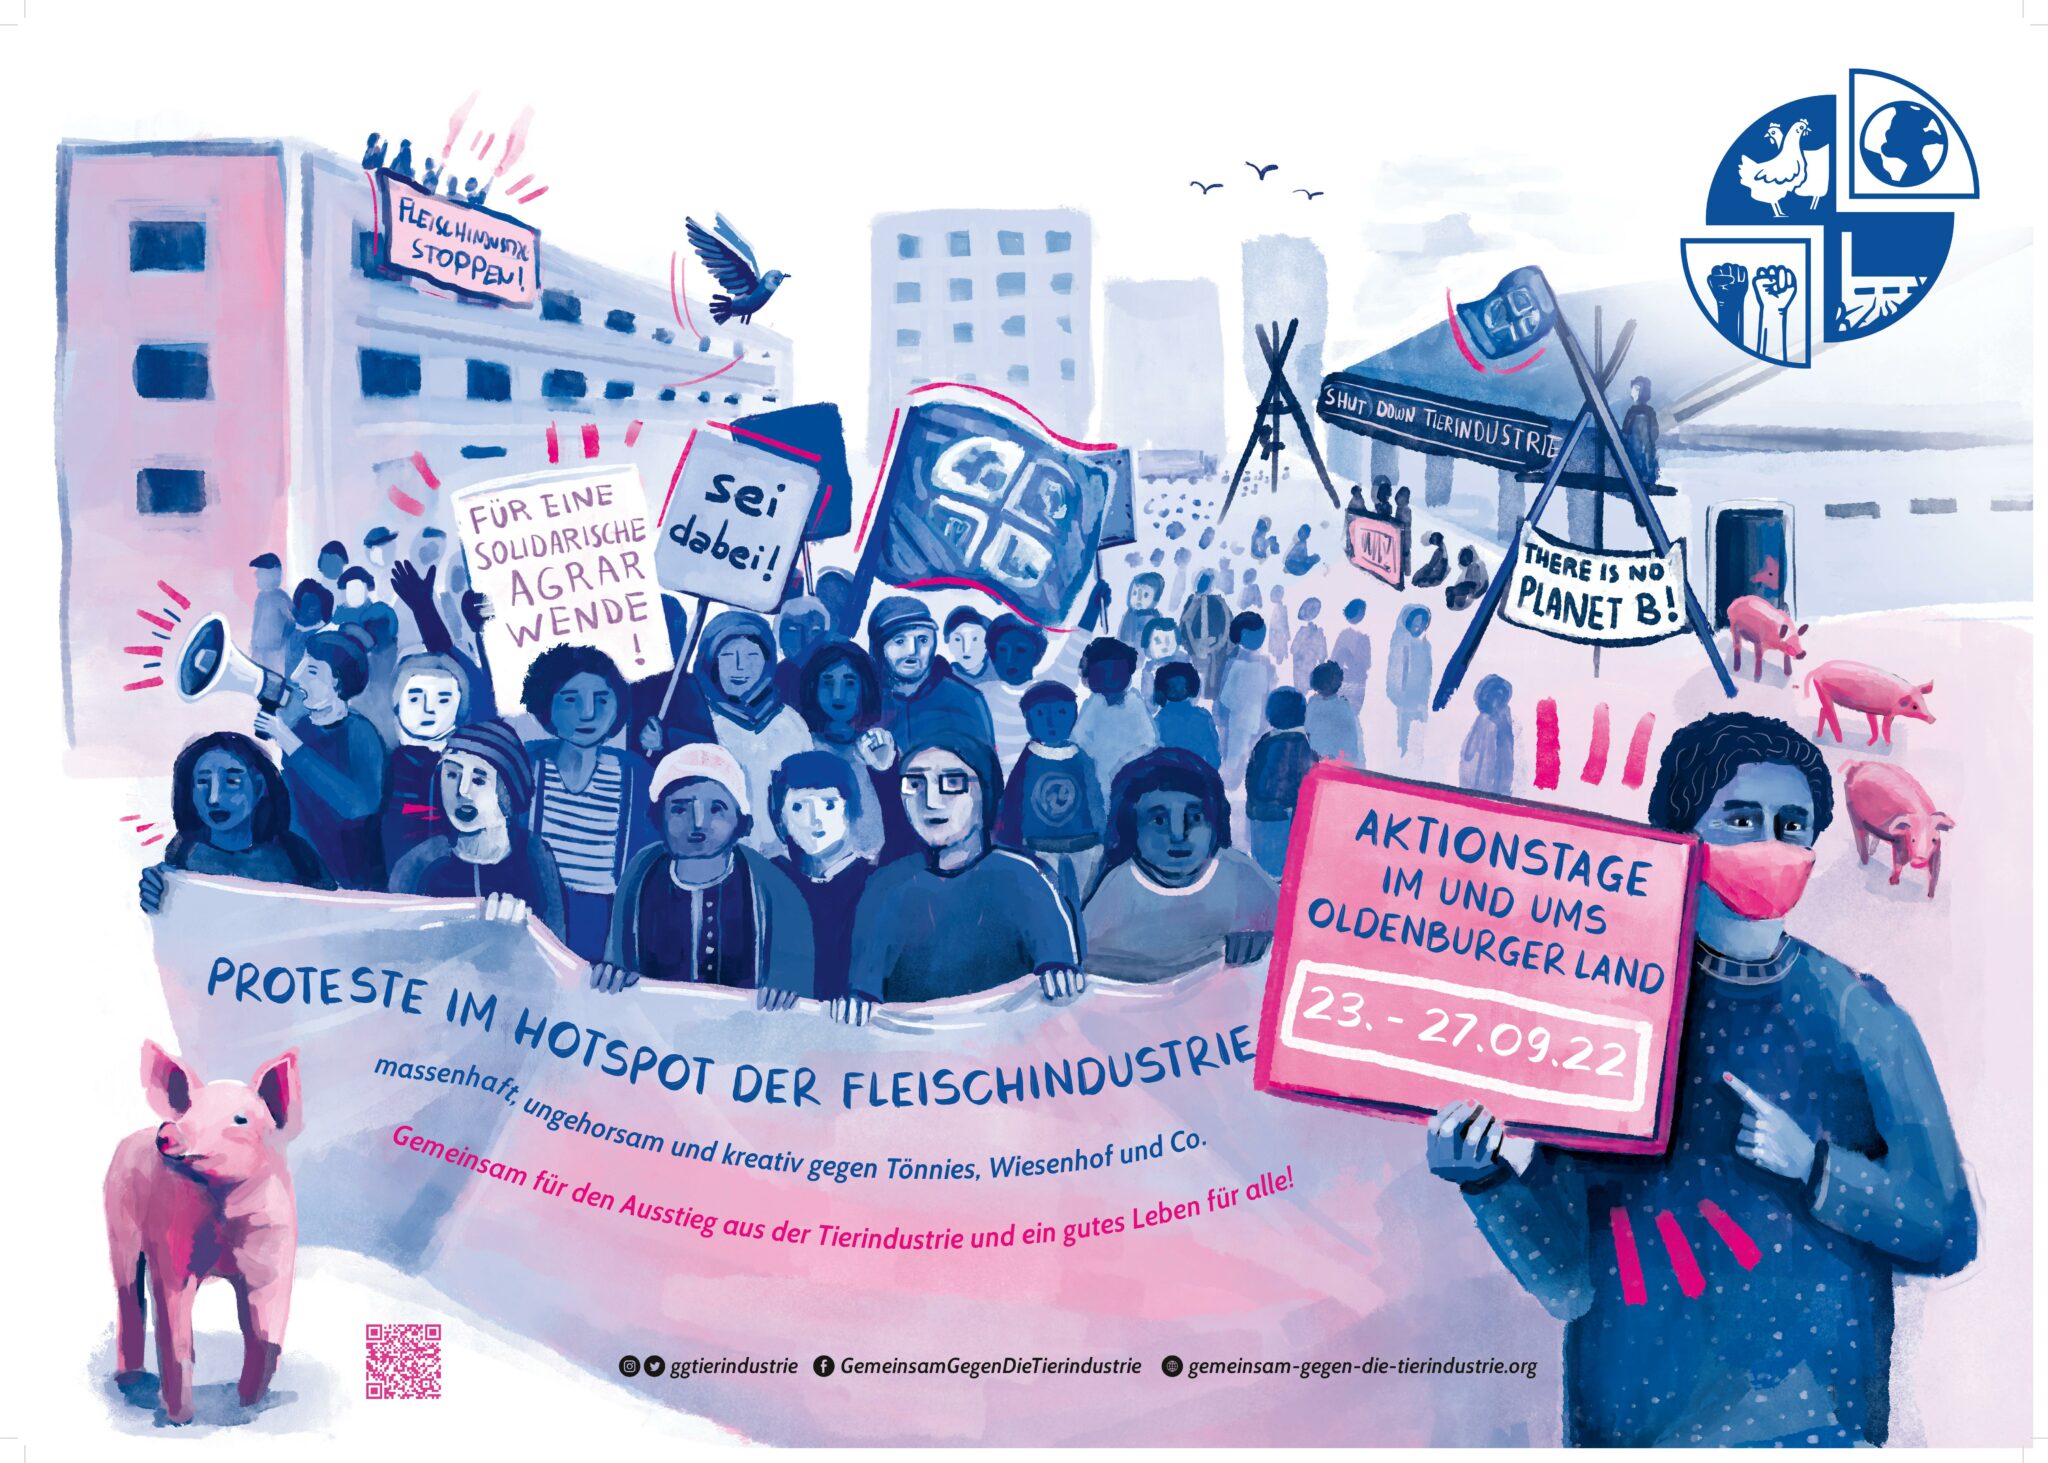 Das Bild zeigt einen gemalten Demonstrationszug der einen Banner mit der Aufschrift 'Proteste im Hotspot der Fleischindustrie' trägt und auf die Aktionstage hinweist.